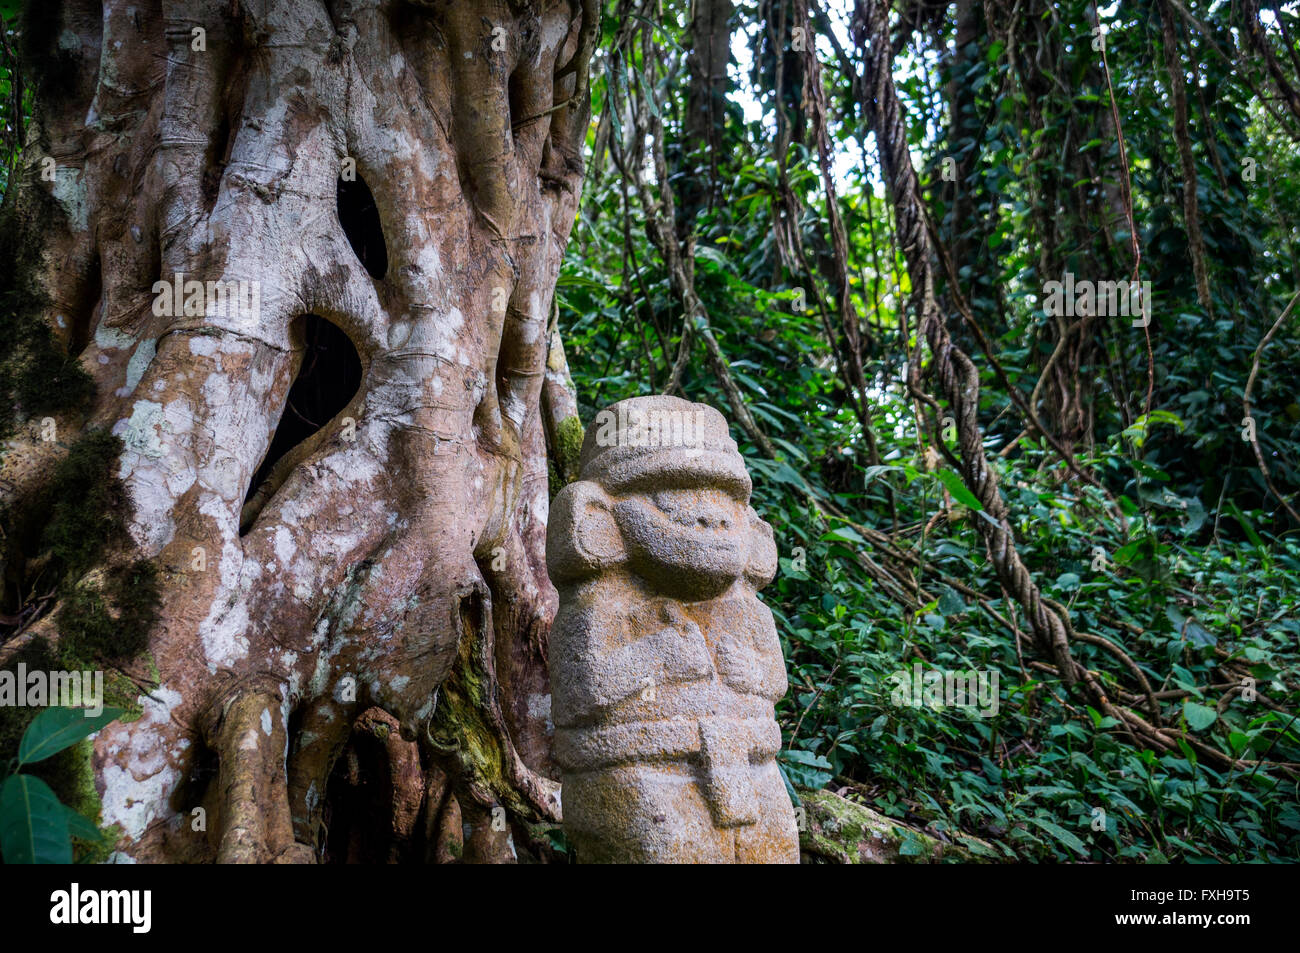 Una misteriosa statua di una persona di sesso maschile si erge nella foresta pluviale accanto a un vecchio albero con radici di grandi dimensioni. Il Foto Stock